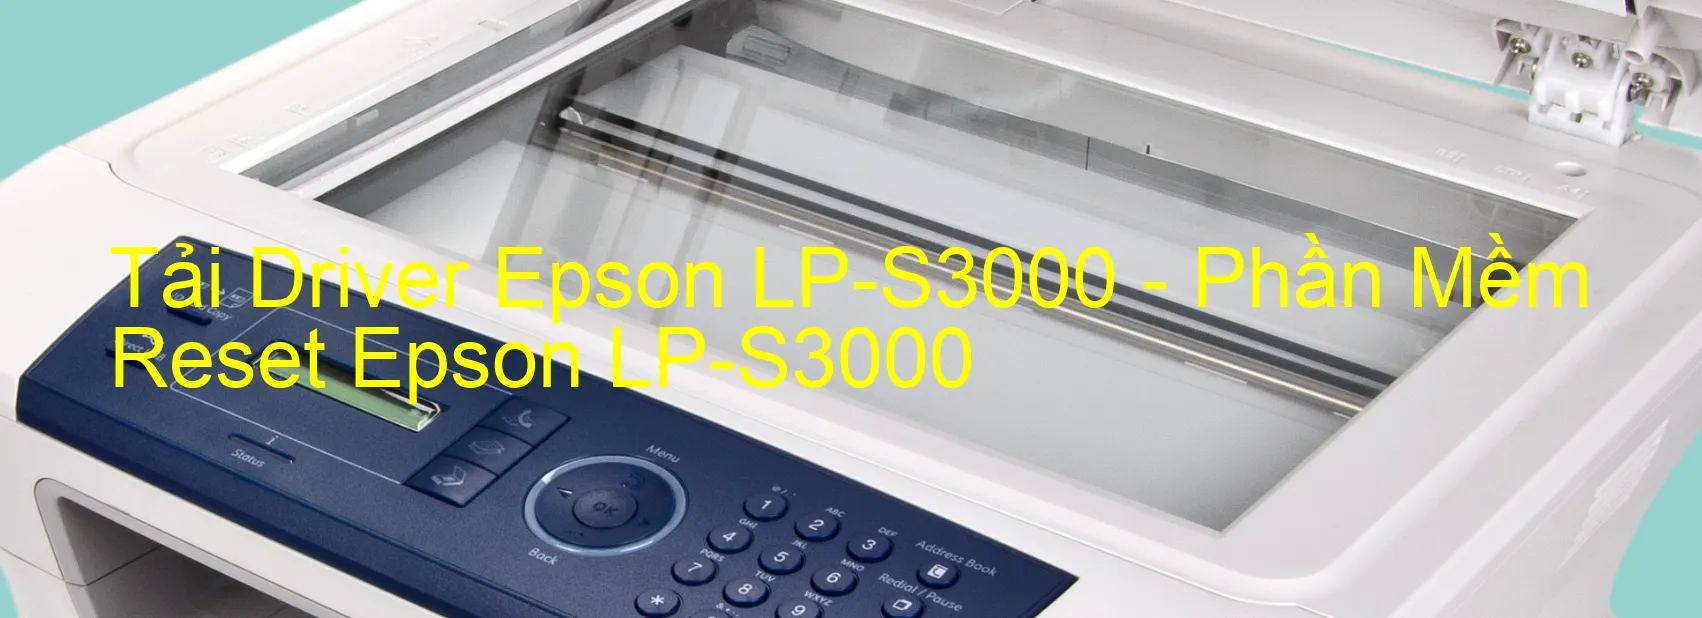 Driver Epson LP-S3000, Phần Mềm Reset Epson LP-S3000